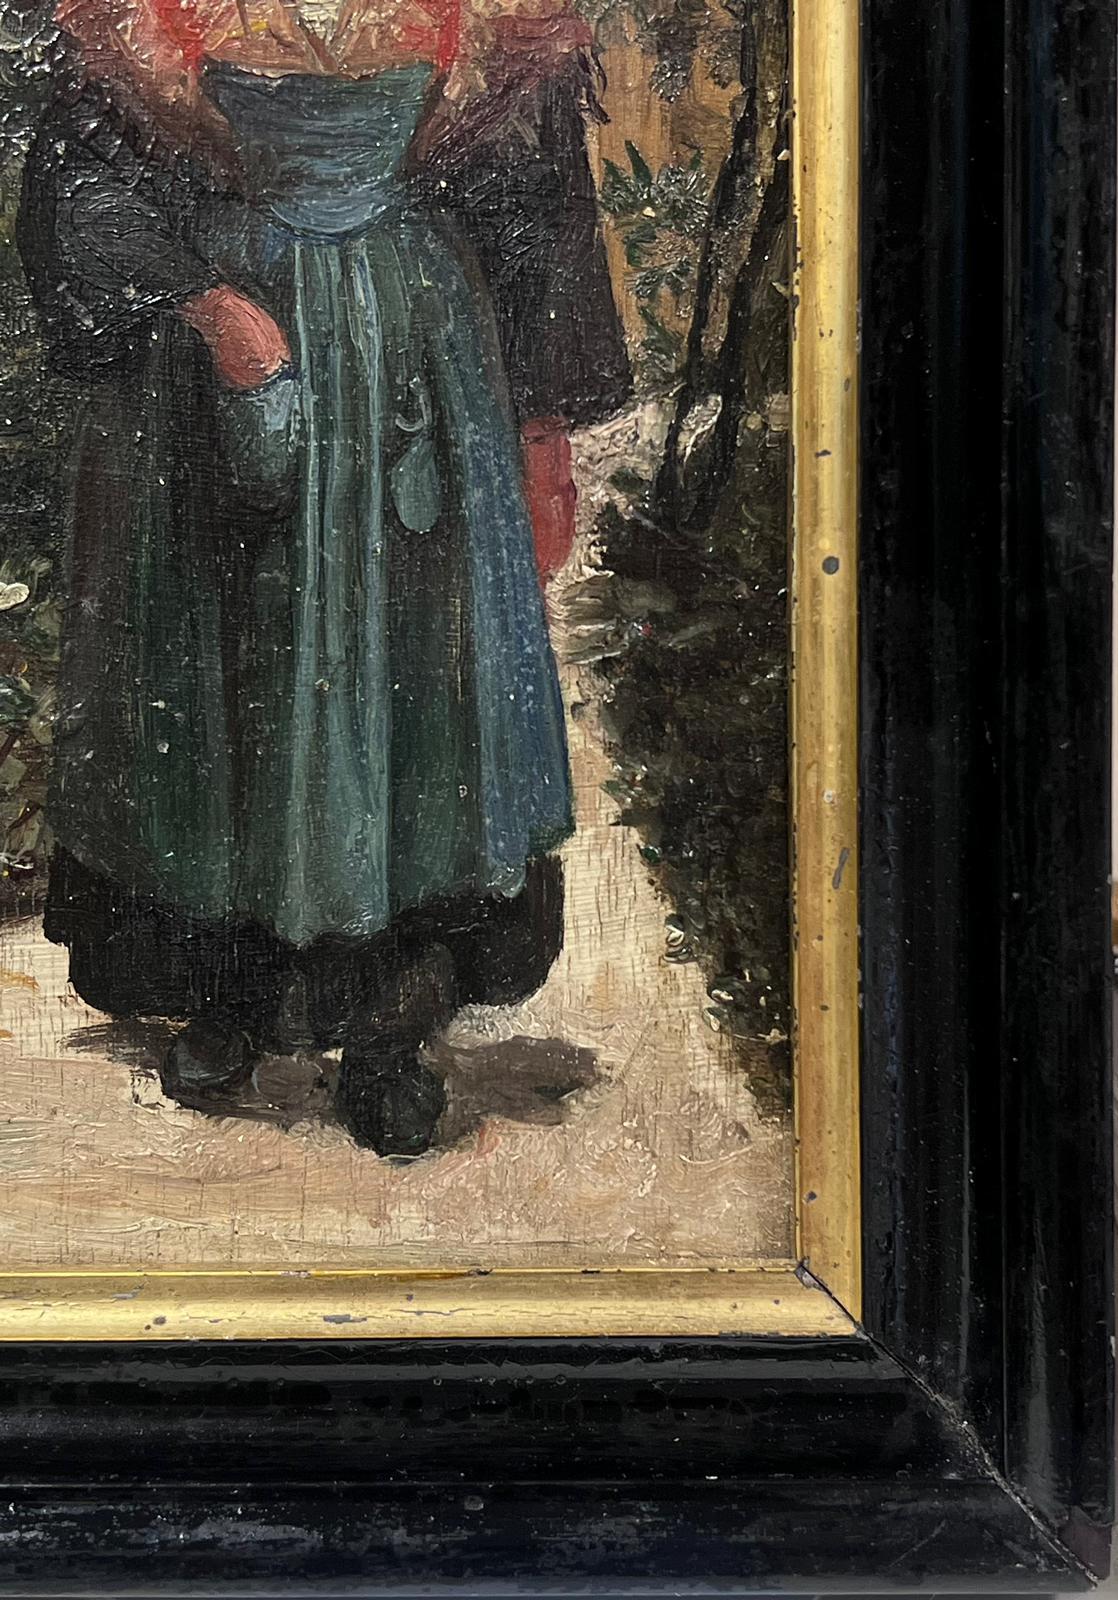 Portrait d'une femme de la campagne
Impressionniste néerlandais, fin du XIXe siècle
huile sur bois - on dirait un couvercle de boîte à cigares ?
encadré
encadré : 11 x 8.5 pouces
planche : 8,5 x 6 pouces
provenance : collection privée, France
état :